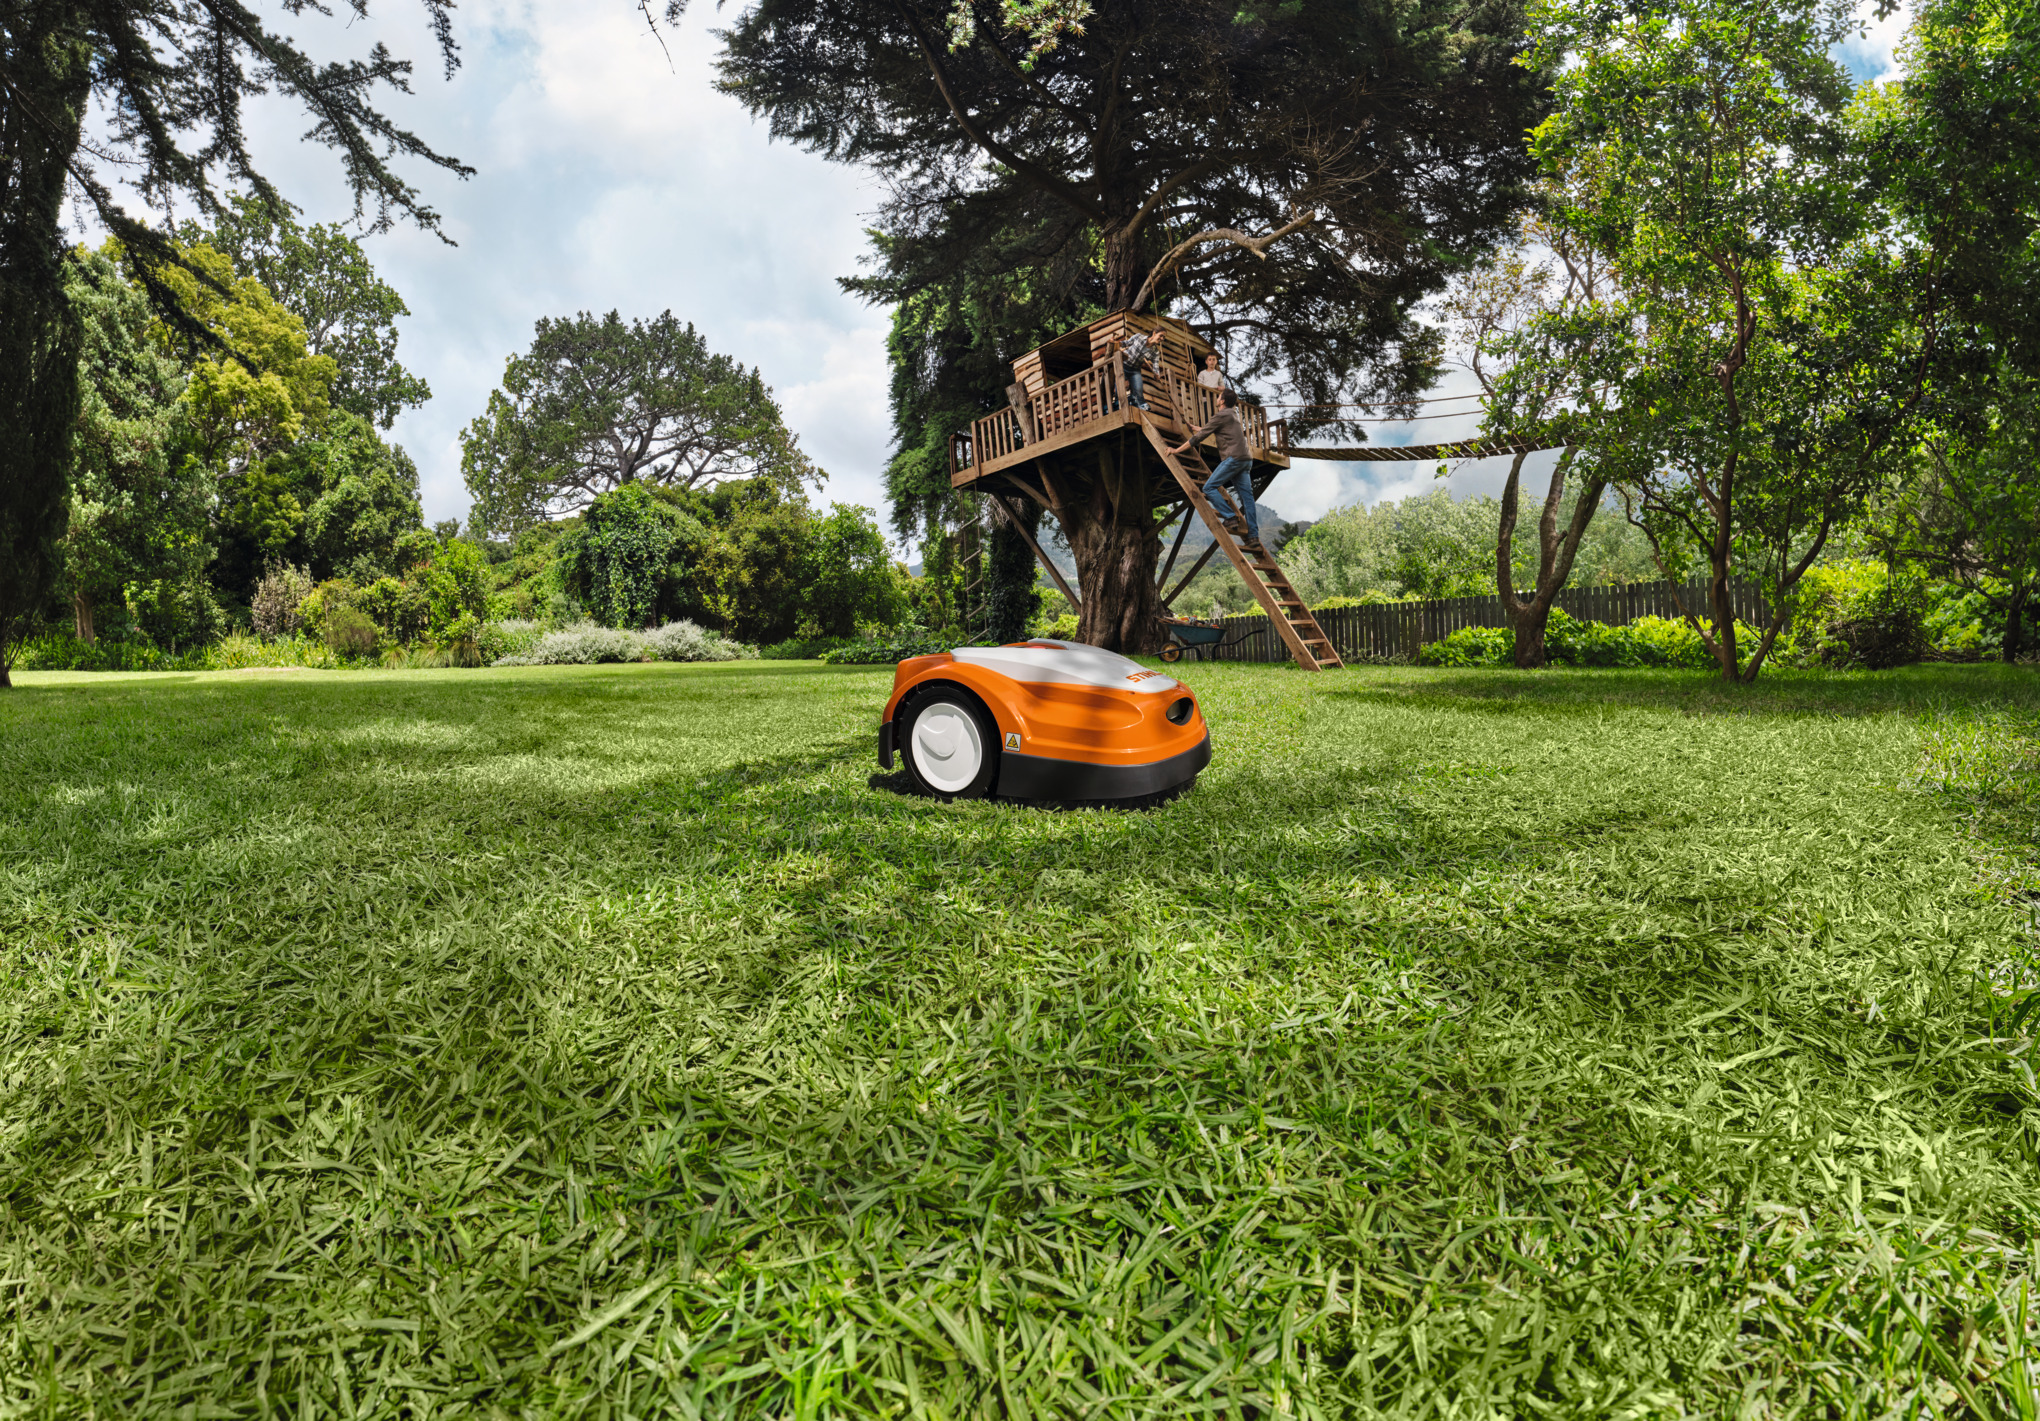 Robot tondeuse RMI 422 STIHL surn une pelouse verte devant une cabane